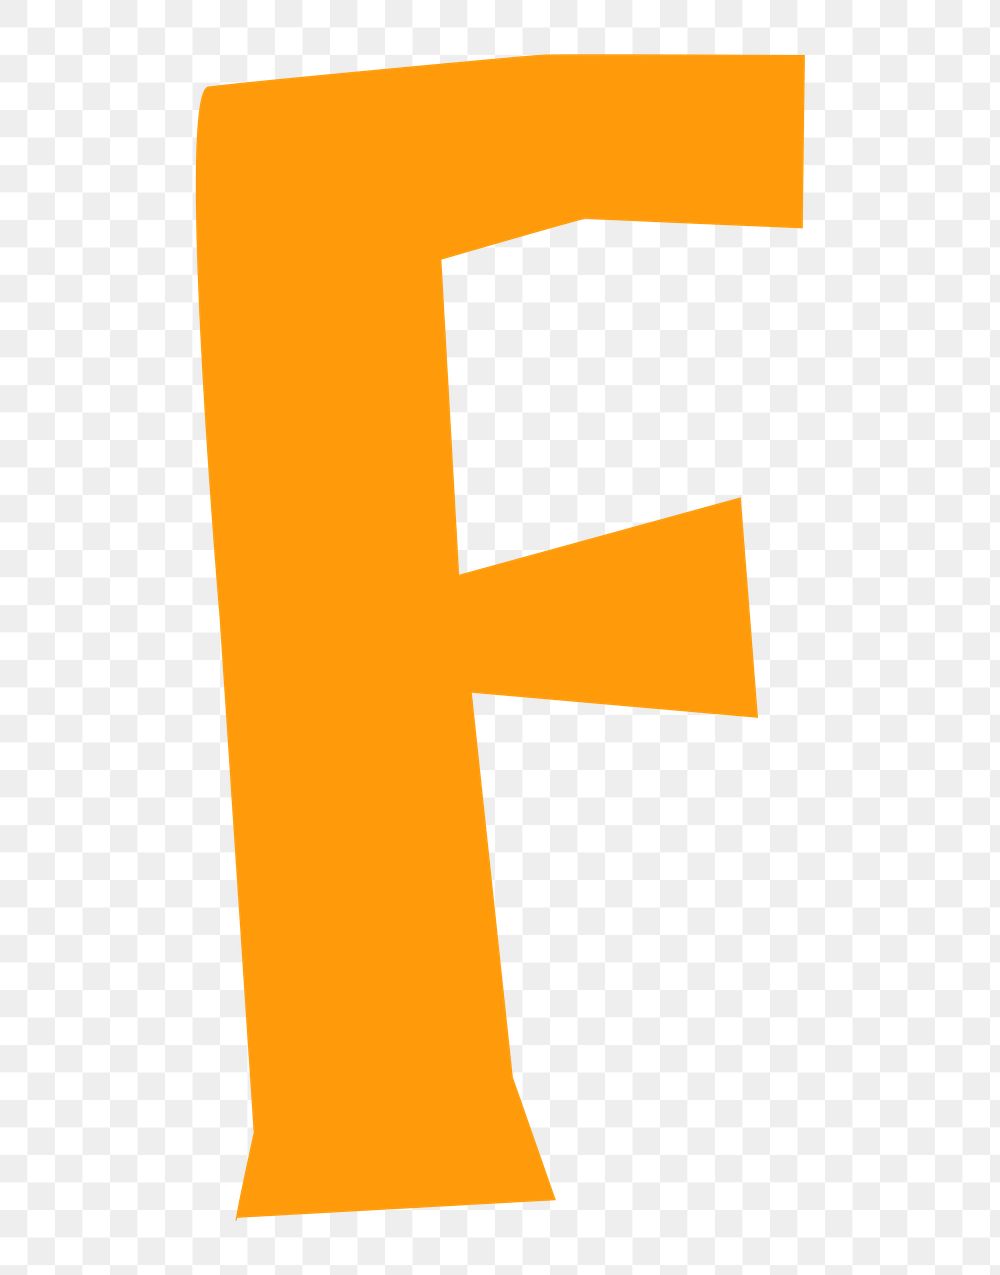 Letter F png in orange paper cut shape font, transparent background